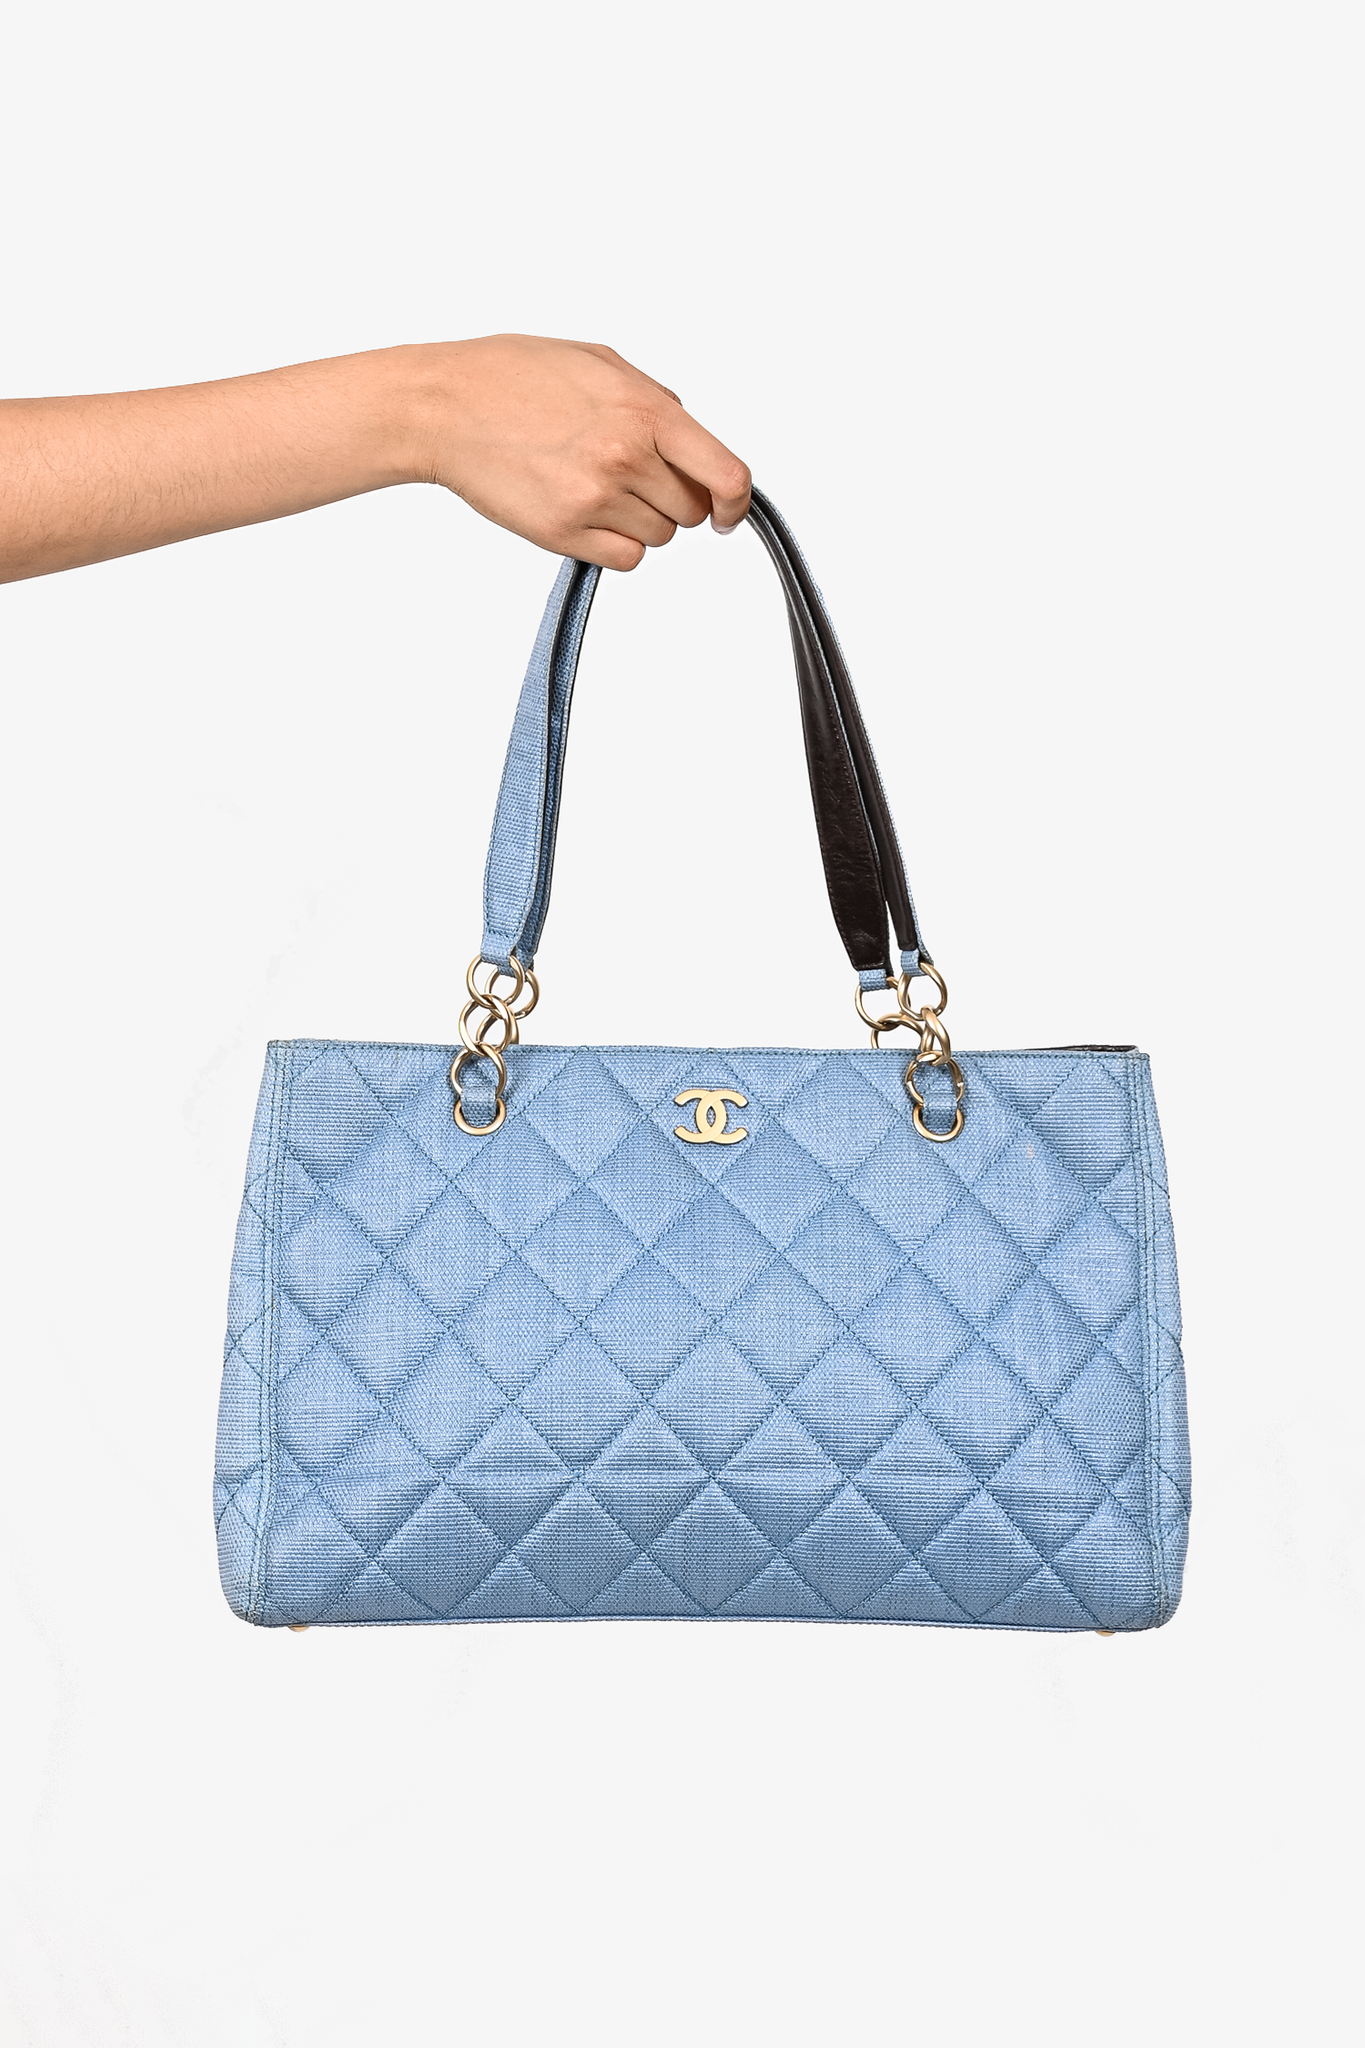 Chanel Maxi in Dark Blue SHW Lambskin Blue - Bags